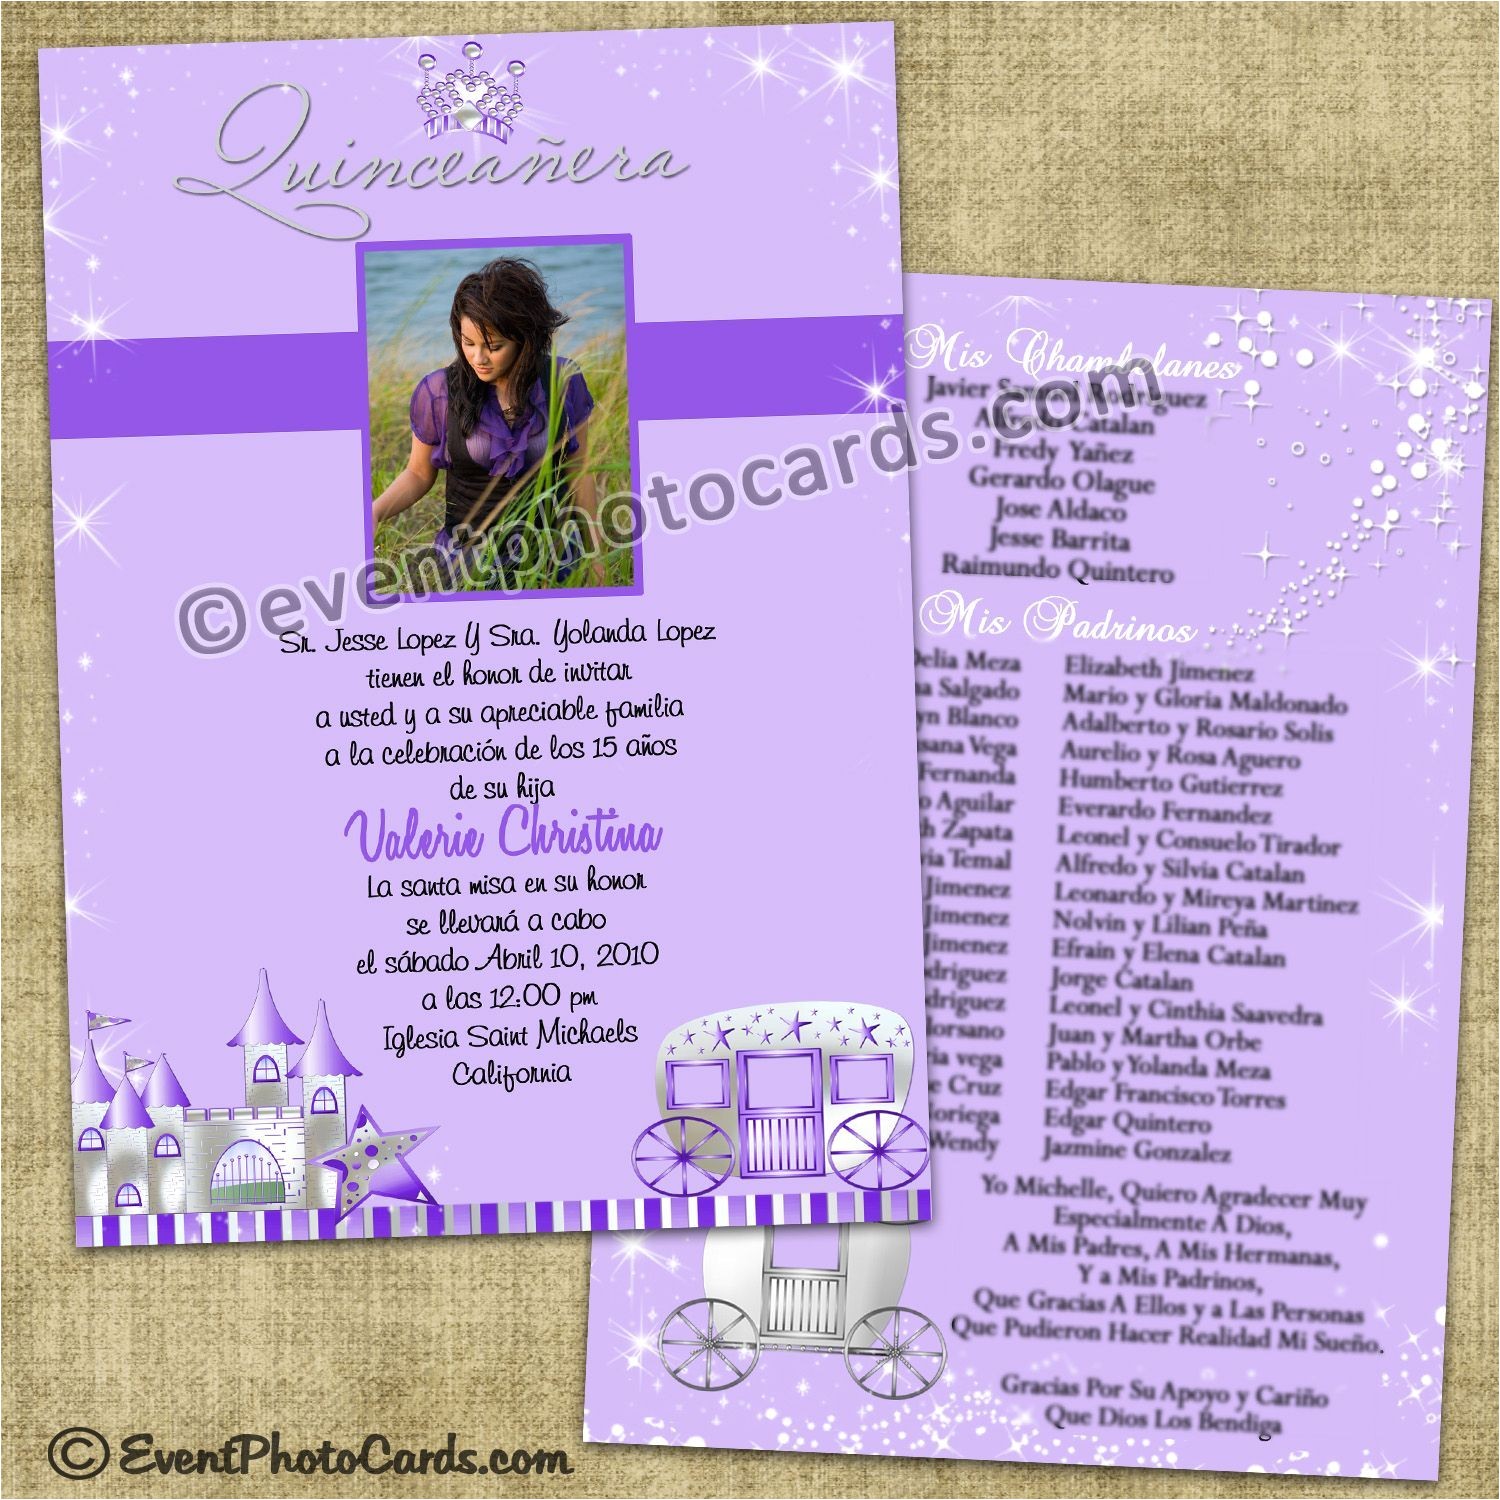 Quinceanera Invitation Wording Ideas Purple Princess Quinceanera Invitations Sweet 15